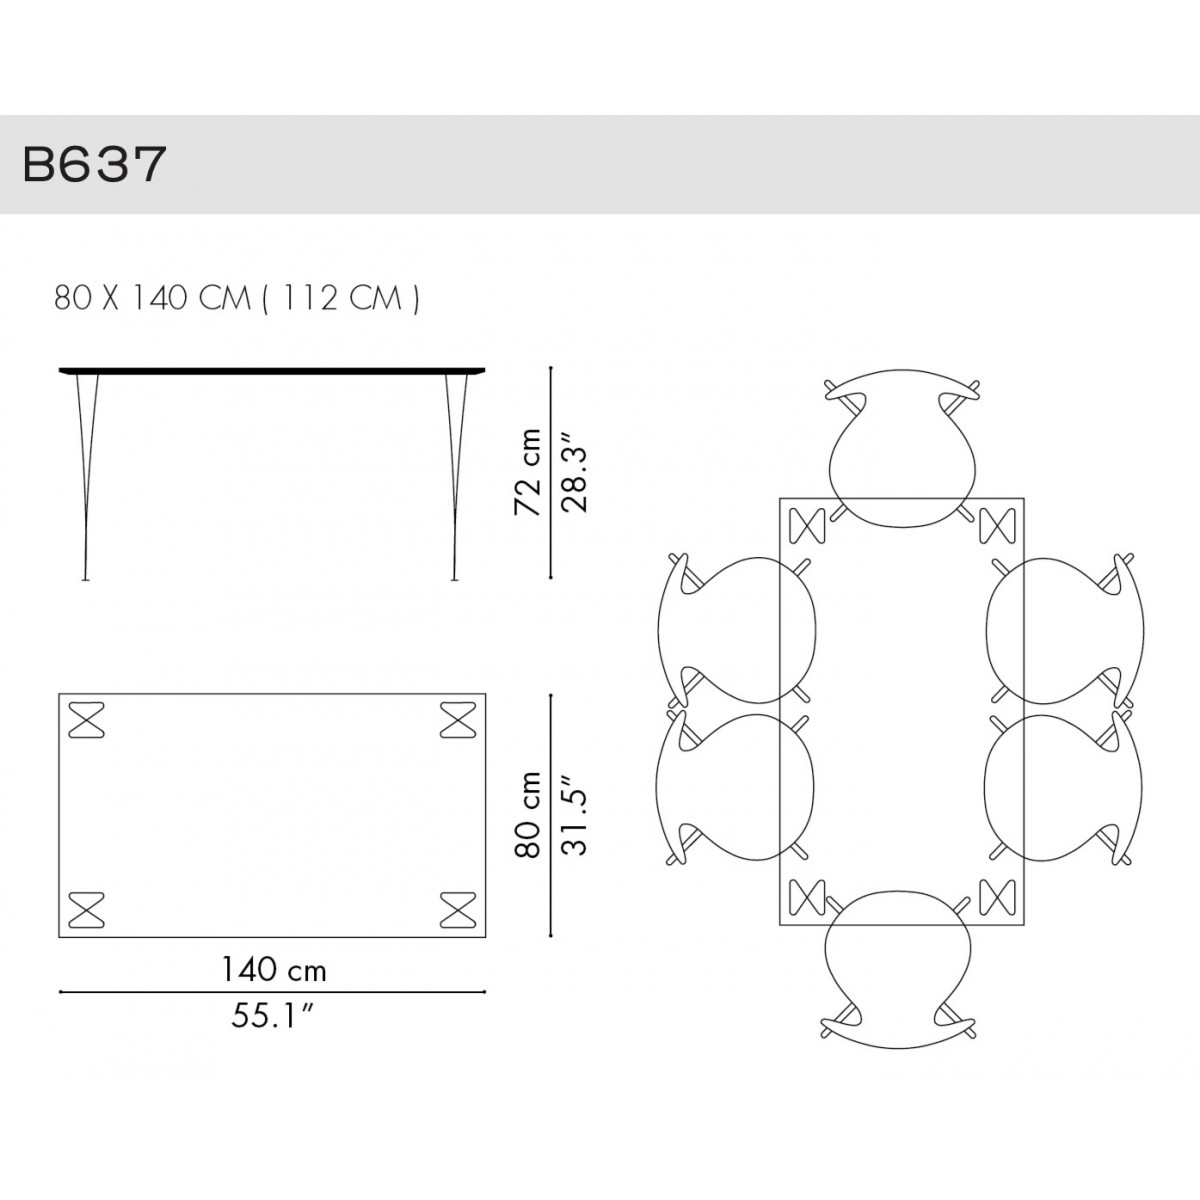 B637 - Rectangular Table Serie